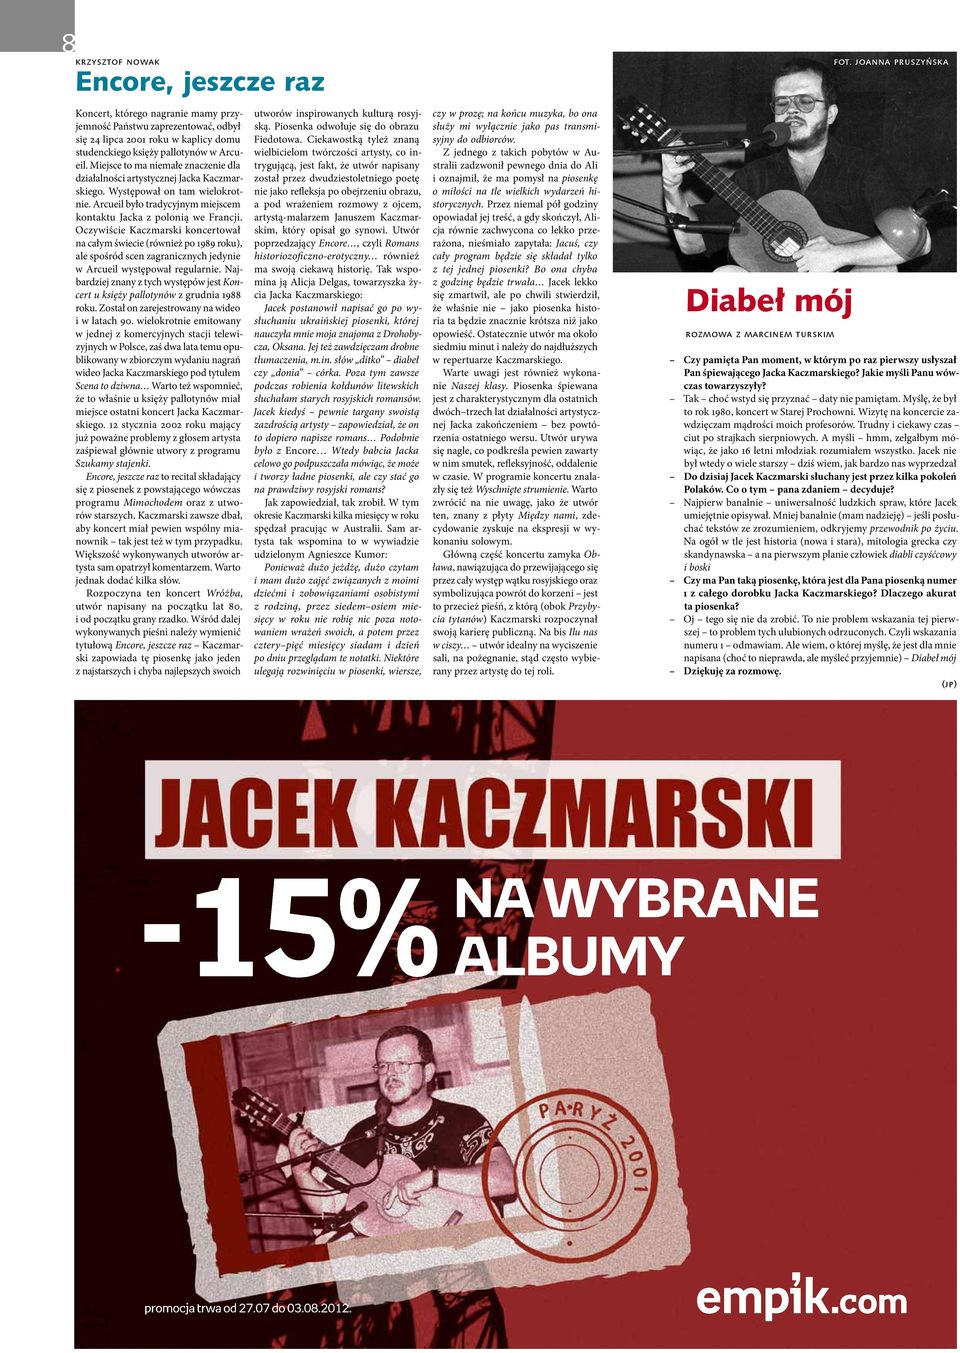 Oczywiście Kaczmarski koncertował na całym świecie (również po 1989 roku), ale spośród scen zagranicznych jedynie w Arcueil występował regularnie.